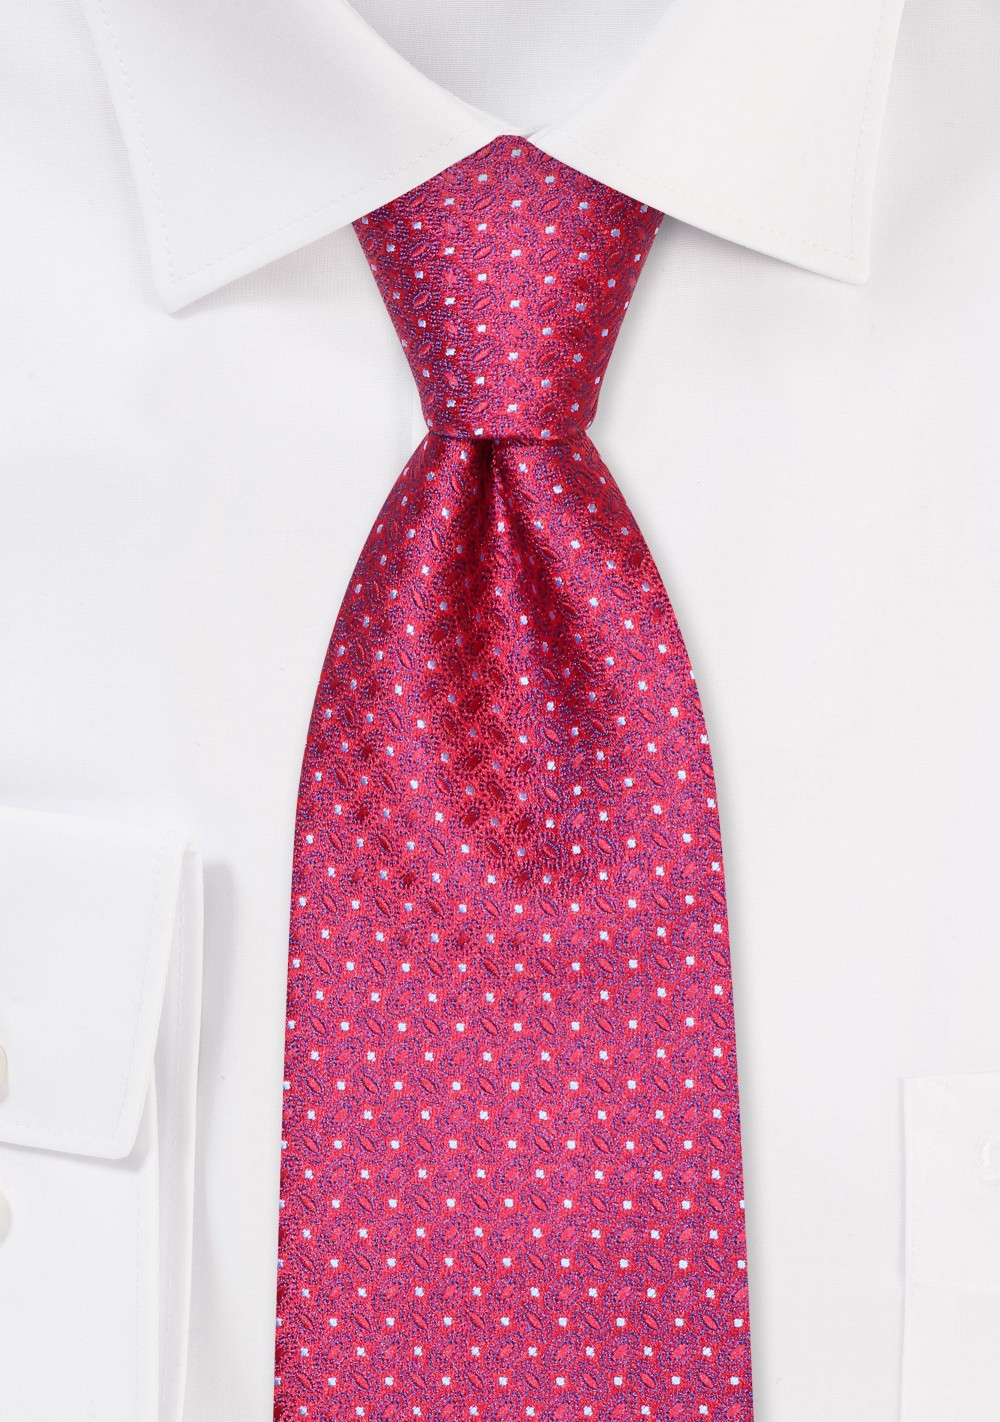 Foulard Weave Designer Tie in Cherry